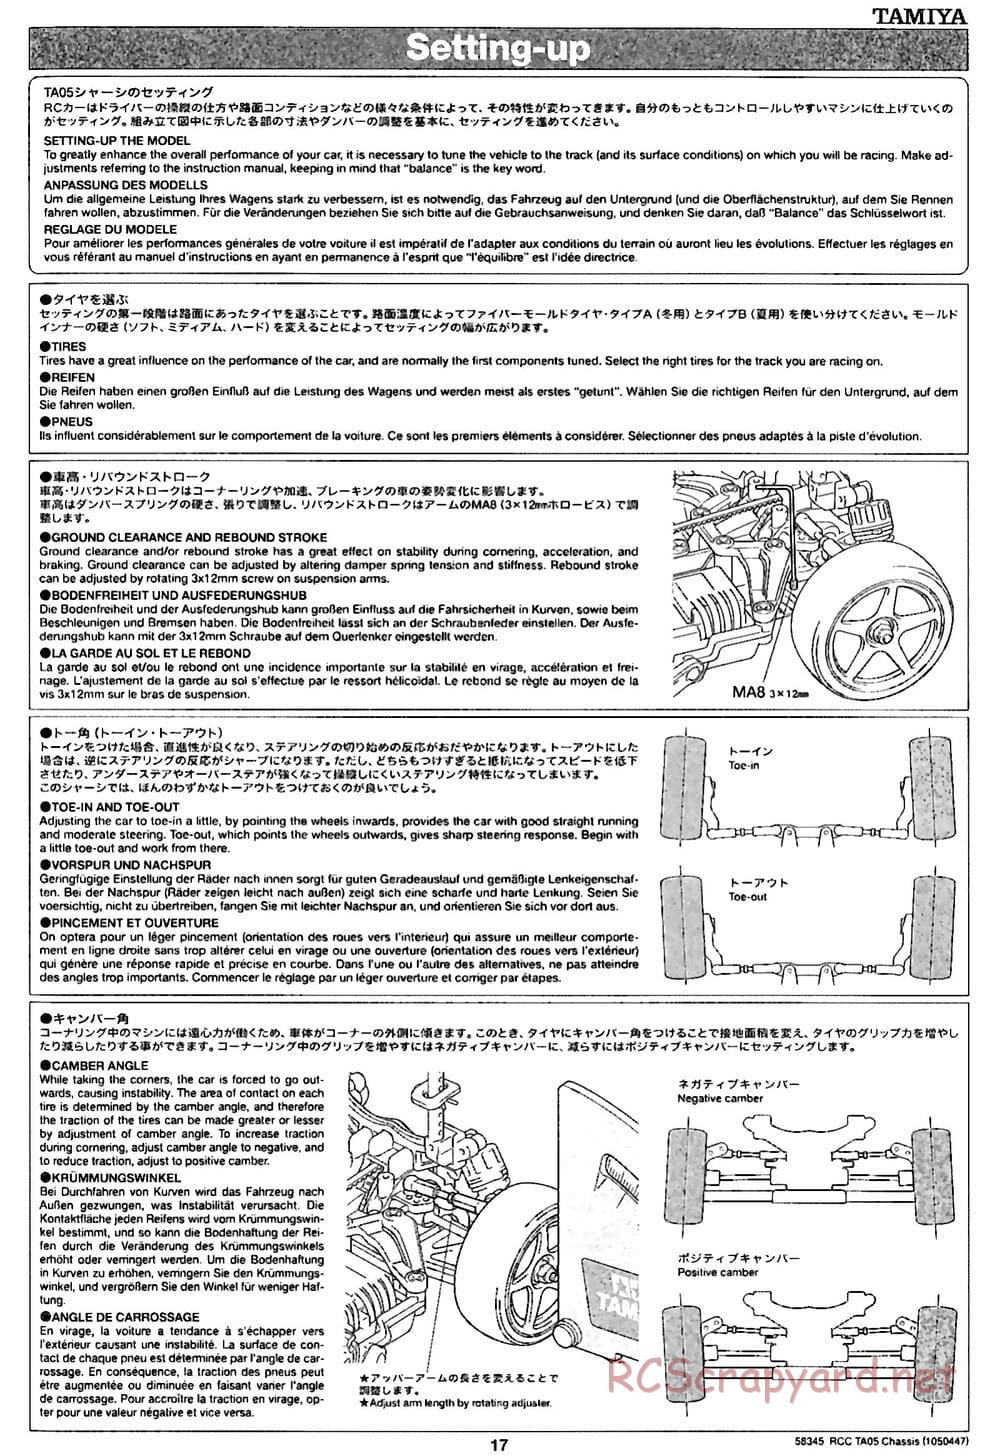 Tamiya - TA05 Chassis - Manual - Page 17